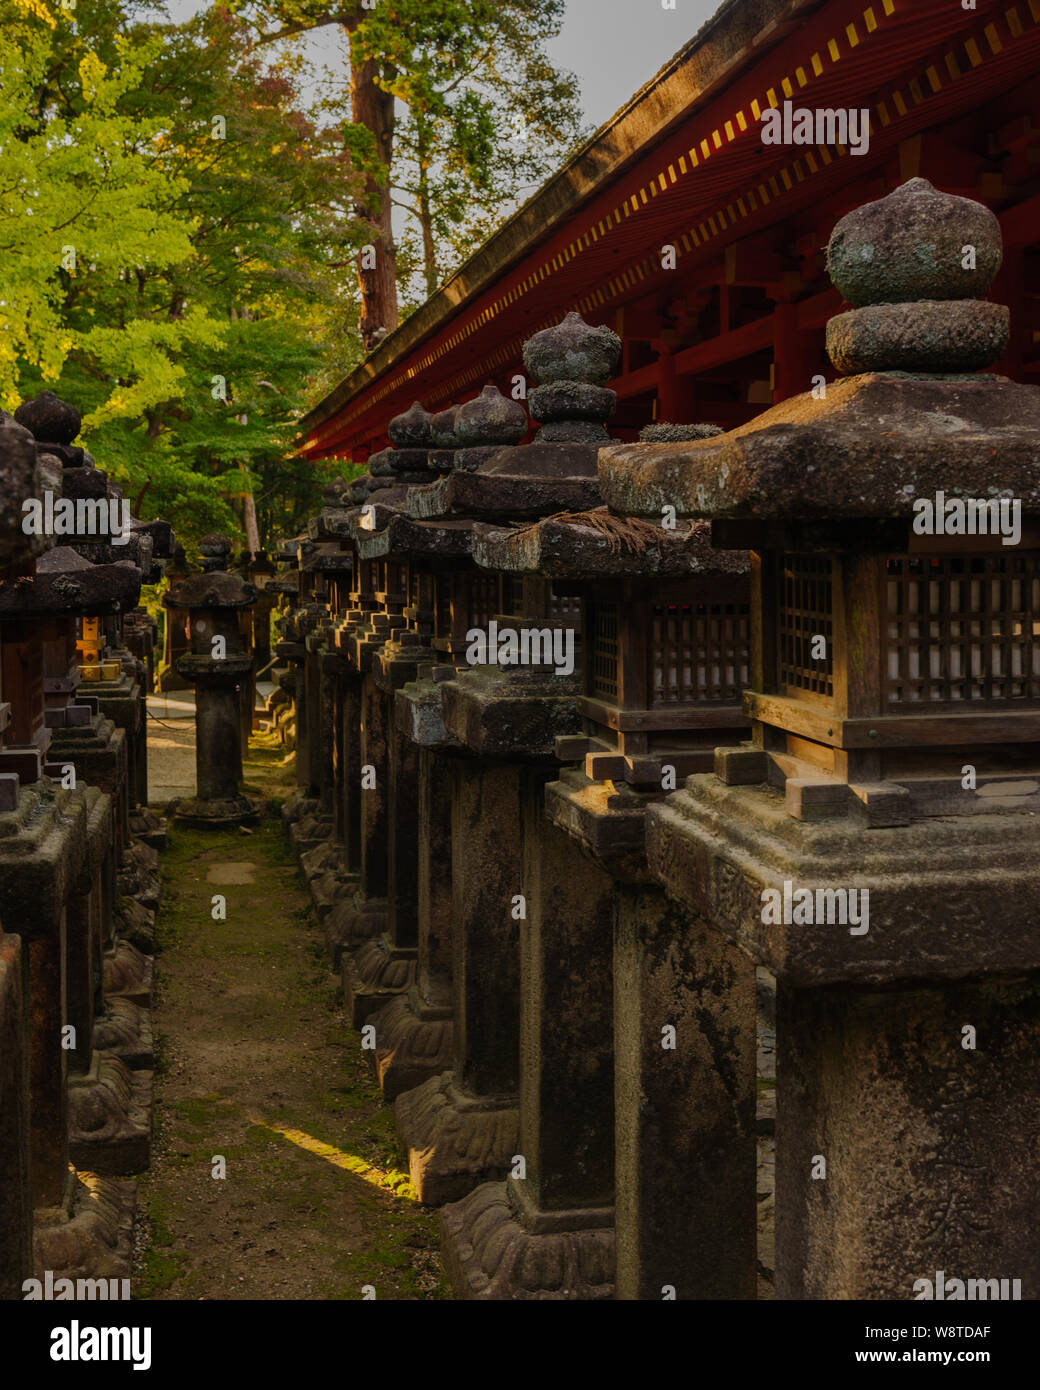 Tradizionale di pietra laterna coperti di muschio in serata calda luce del sole sono i simboli iconici di Naras Kasuga Taisha, Giappone Novembre 2018 Foto Stock